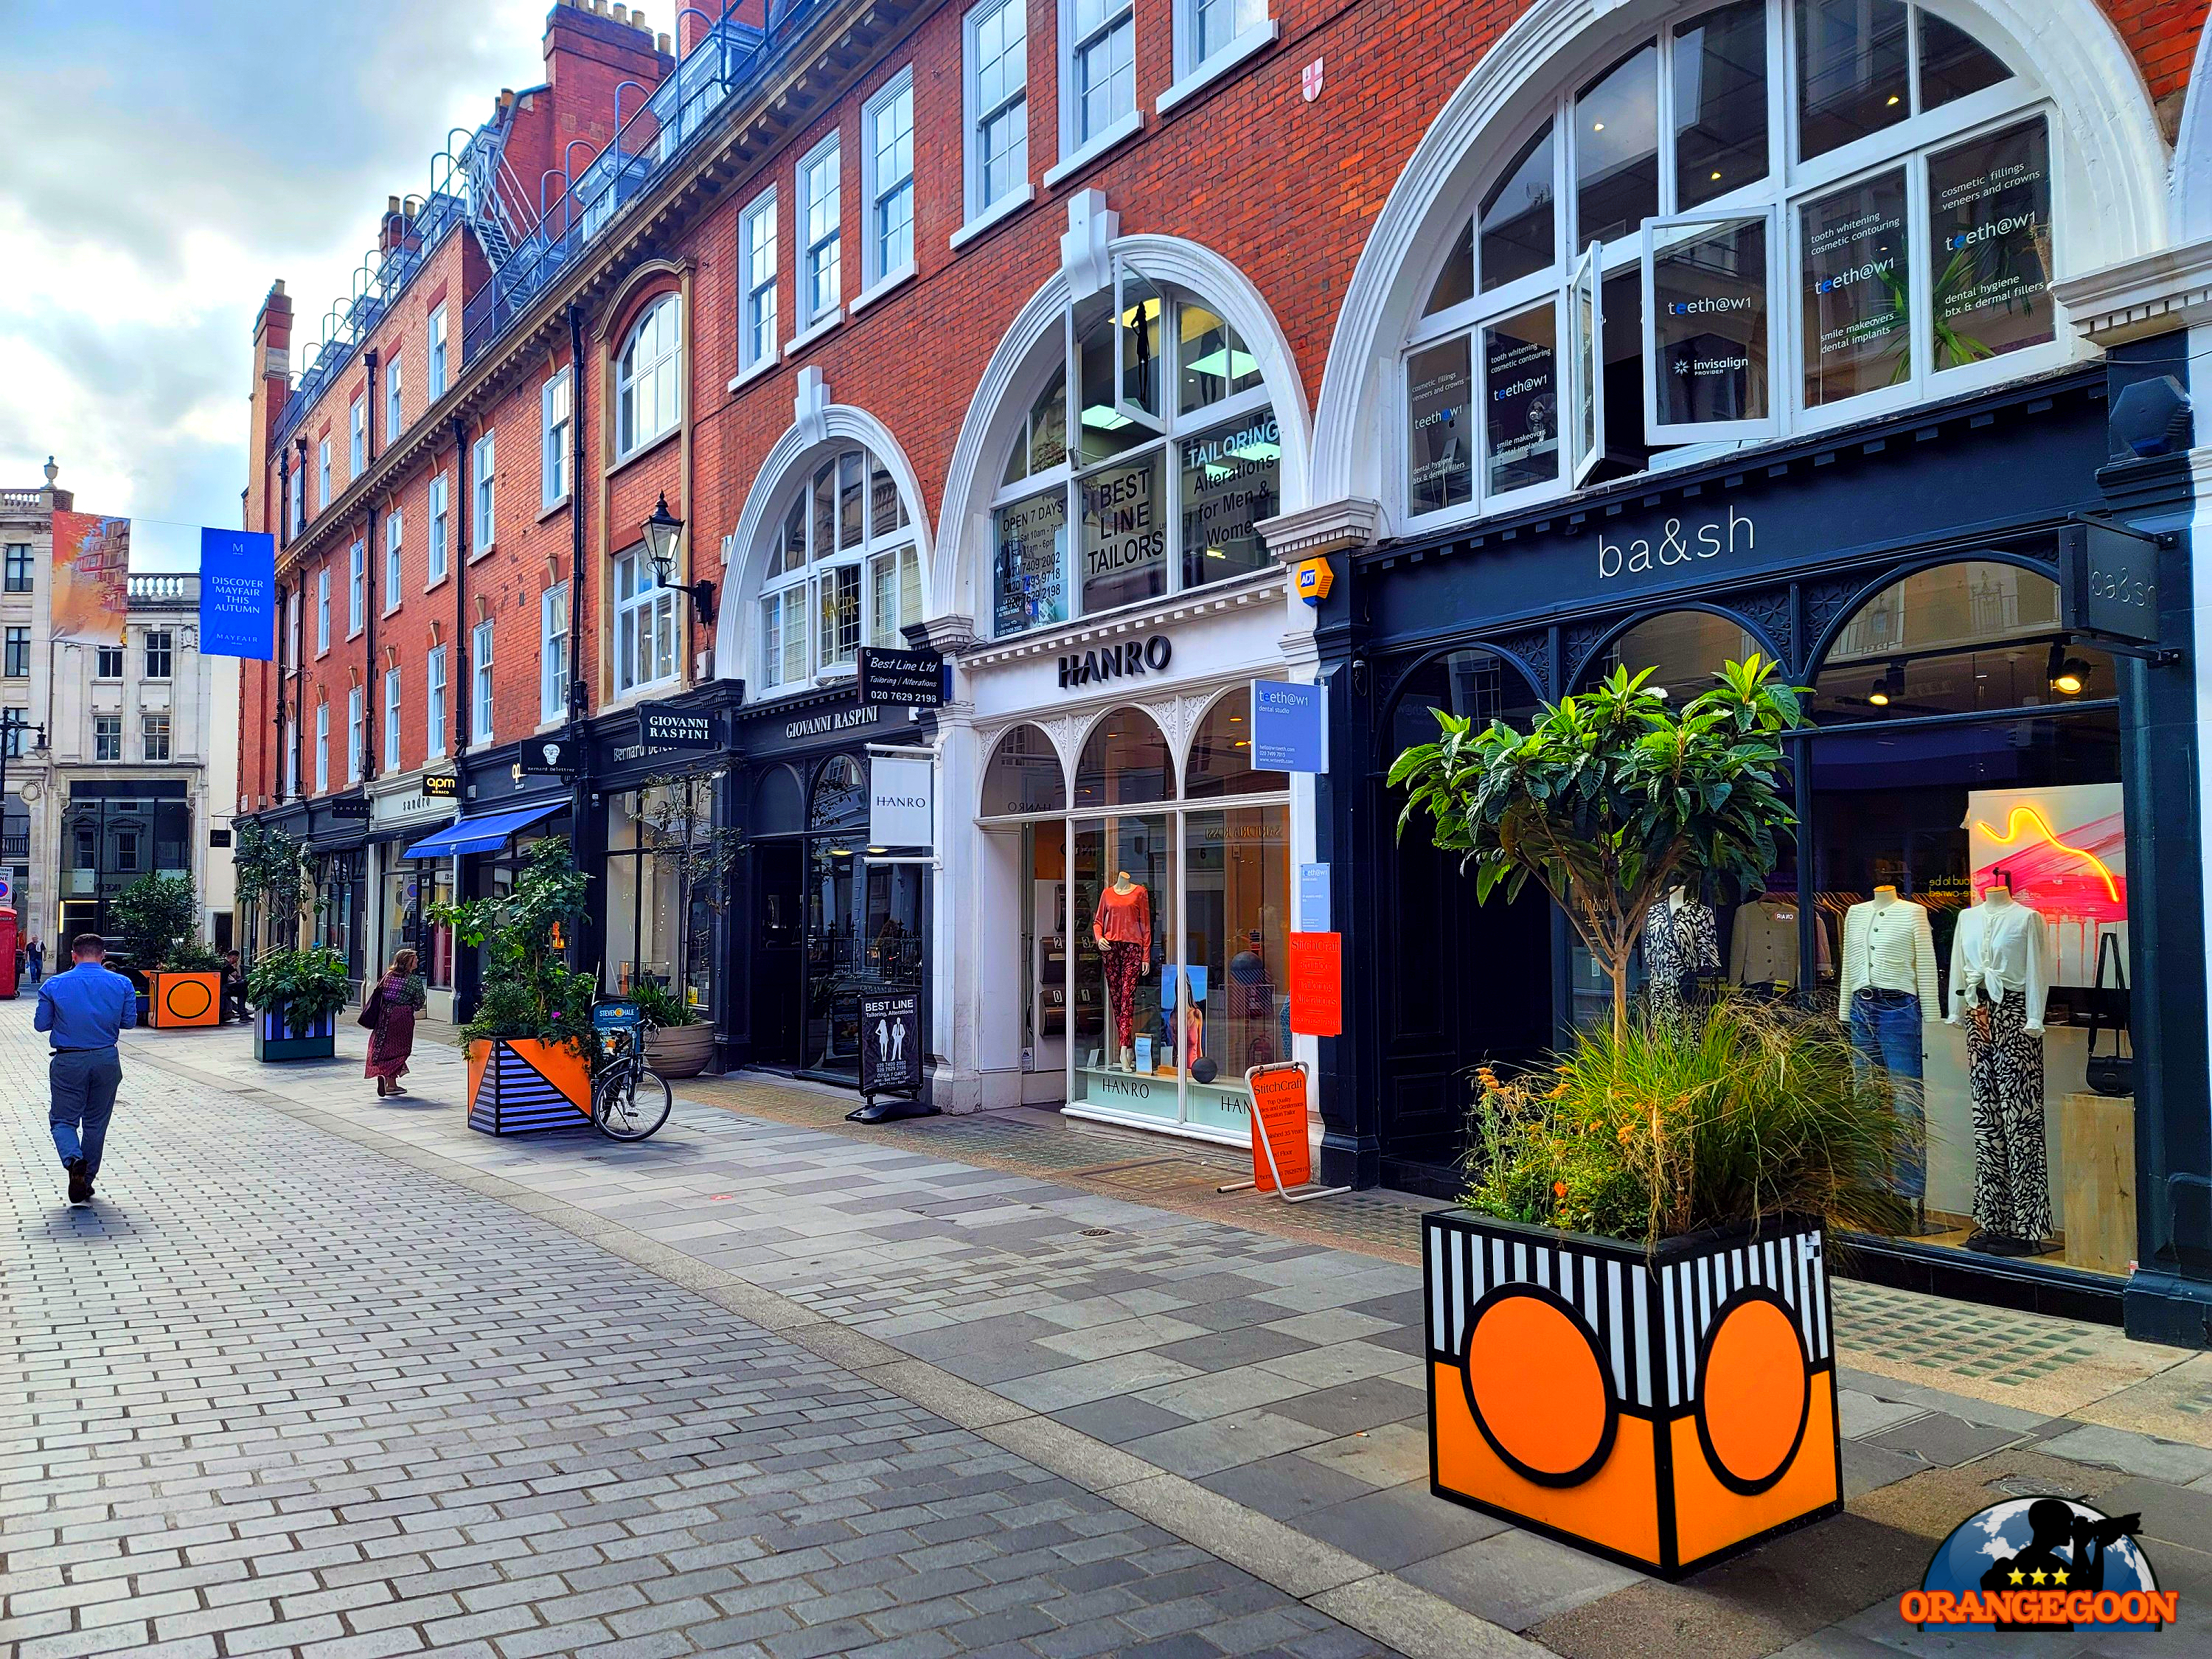 (영국 런던 / 런던 도보 여행 #85) 역사와 문화의 도시. 런던의 거리를 뚜벅뚜벅<옥스포드 스트리트, 메이페어, 리전트 스트리트>